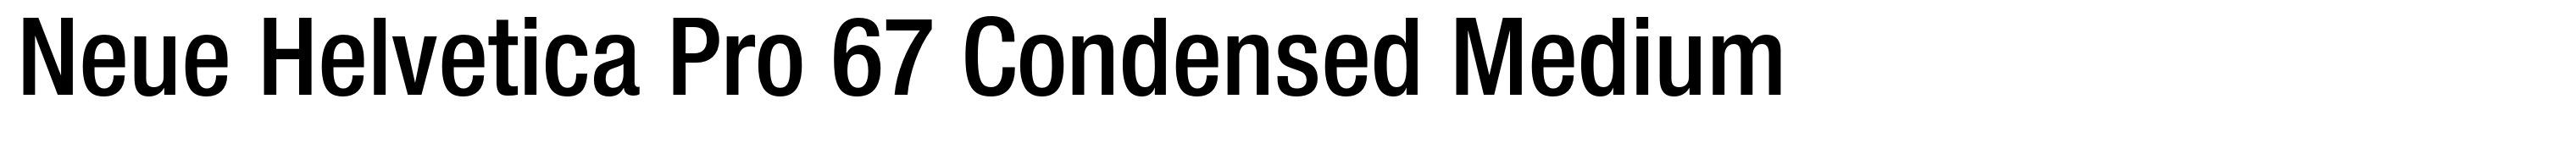 Neue Helvetica Pro 67 Condensed Medium